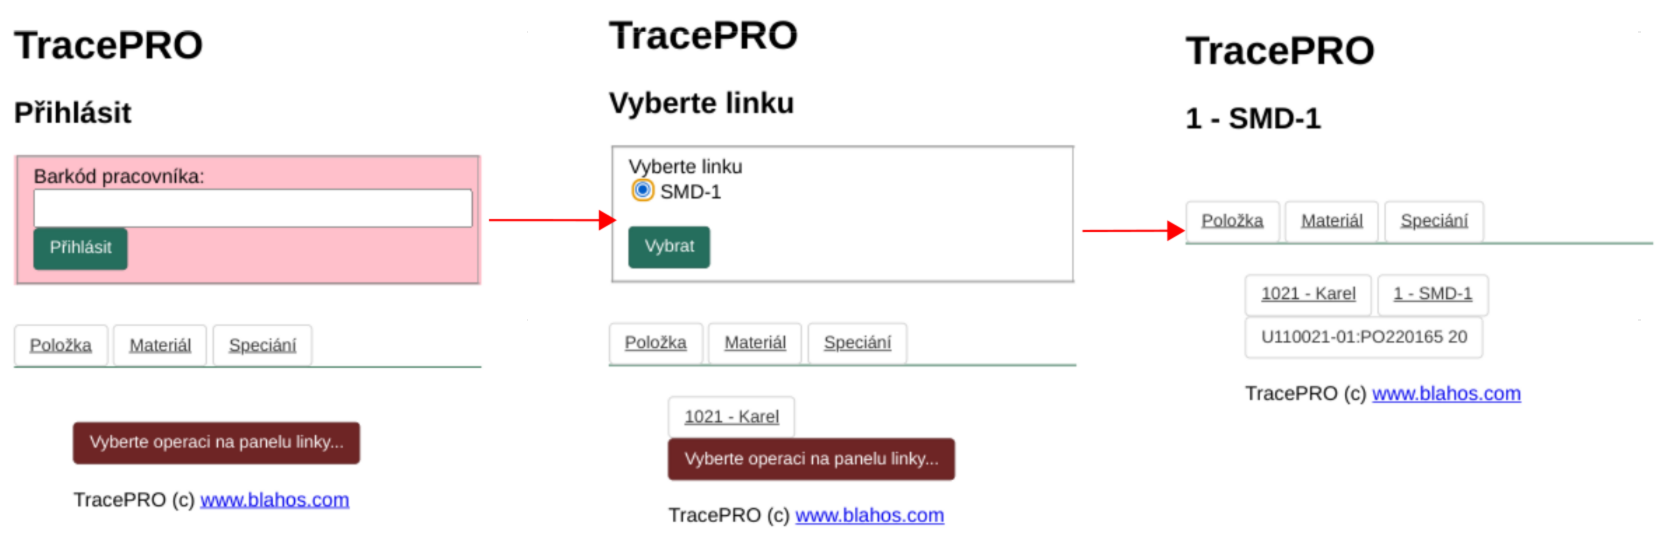 tracepro-pda-01